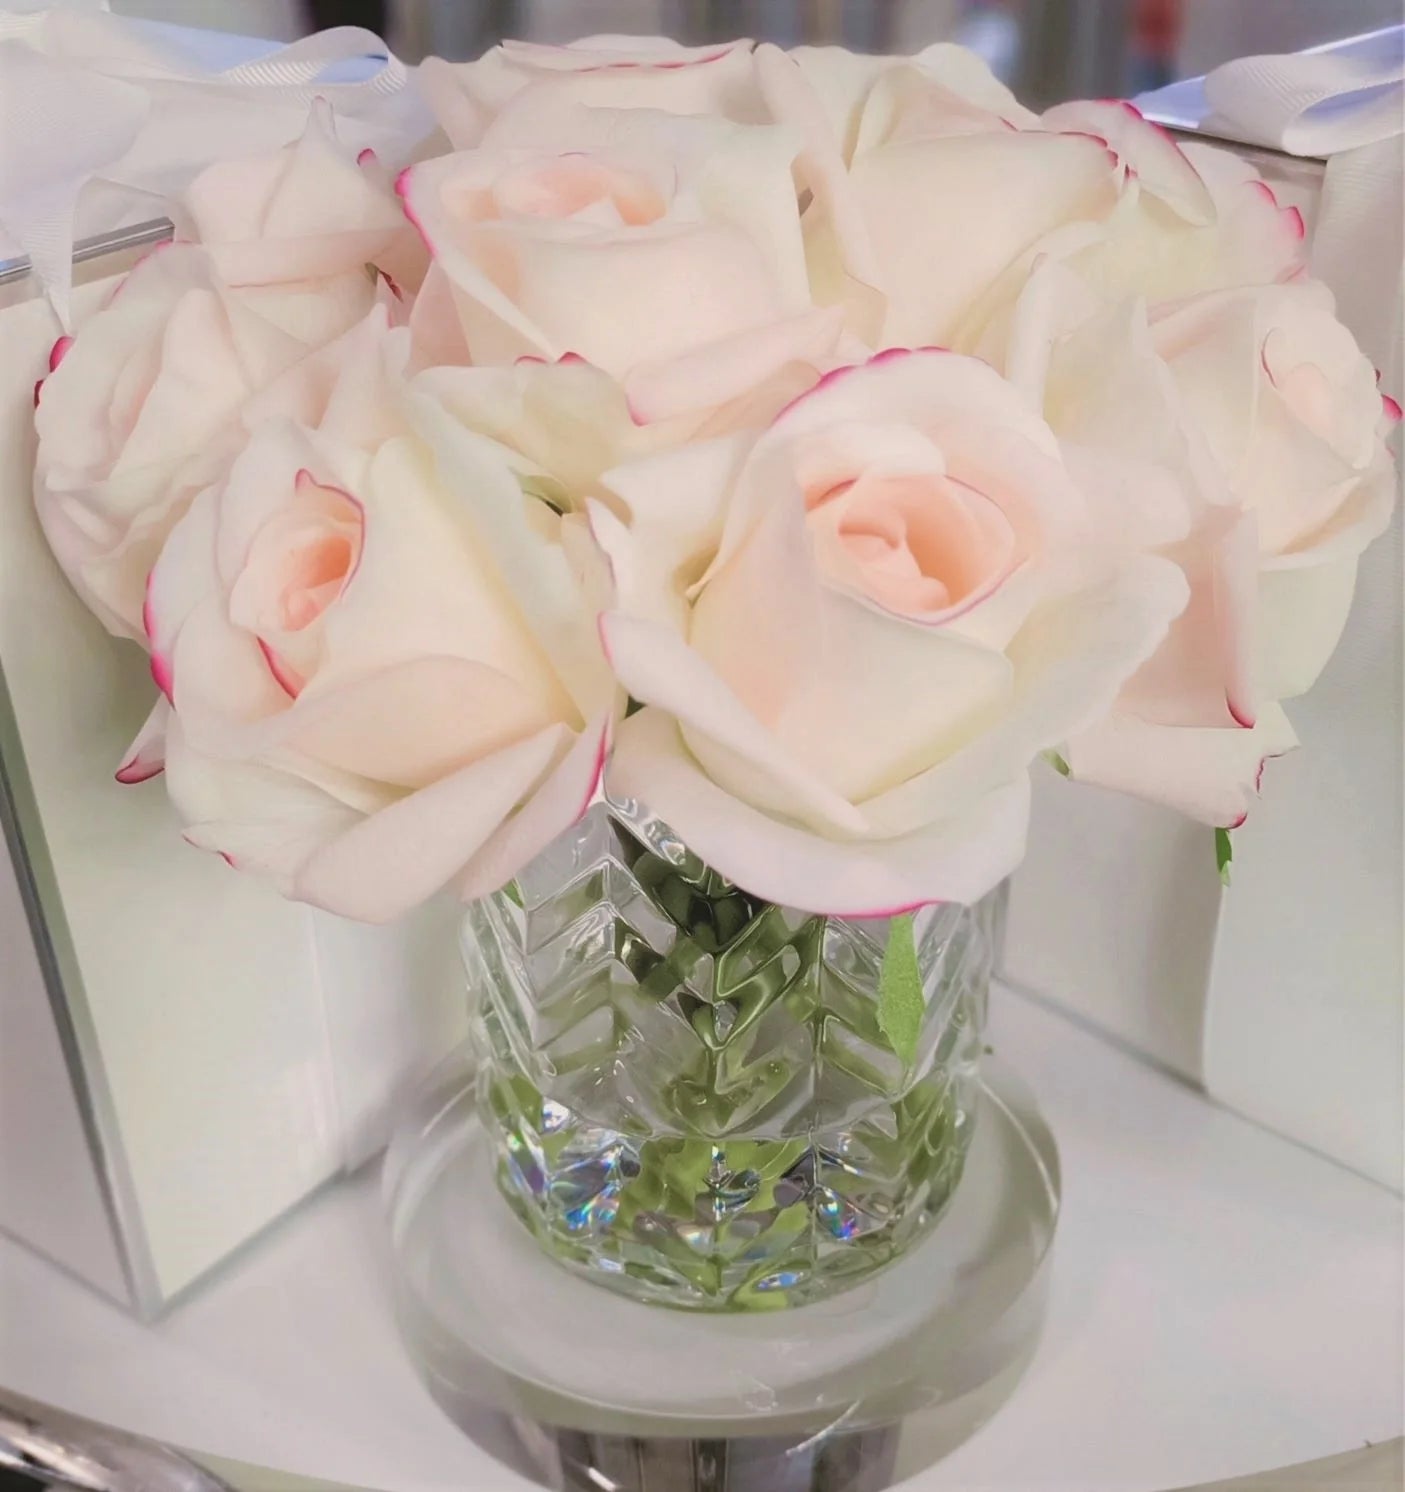 frontsicht auf pink blush rosen in gemustertem glas auf einer runden glasscheibe.